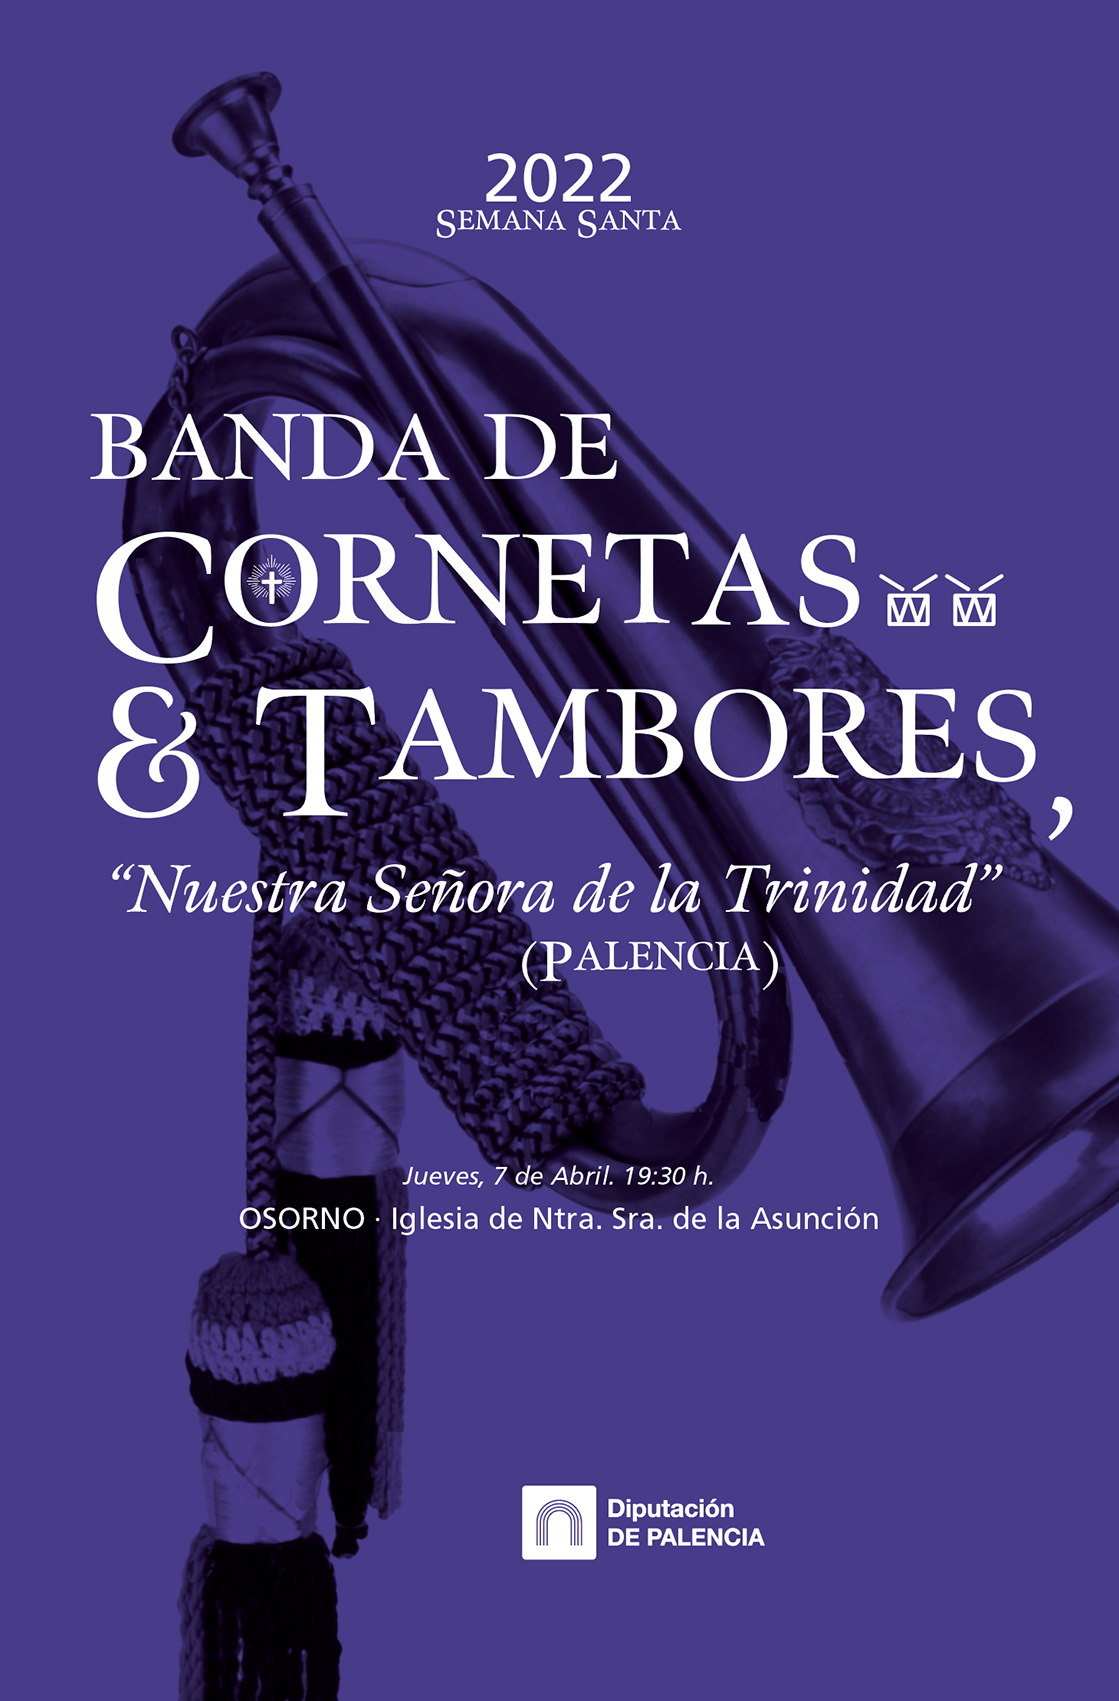 BANDA DE CORNETAS Y TAMBORES "NUESTRA SEÑORA DE LA TRINIDAD"